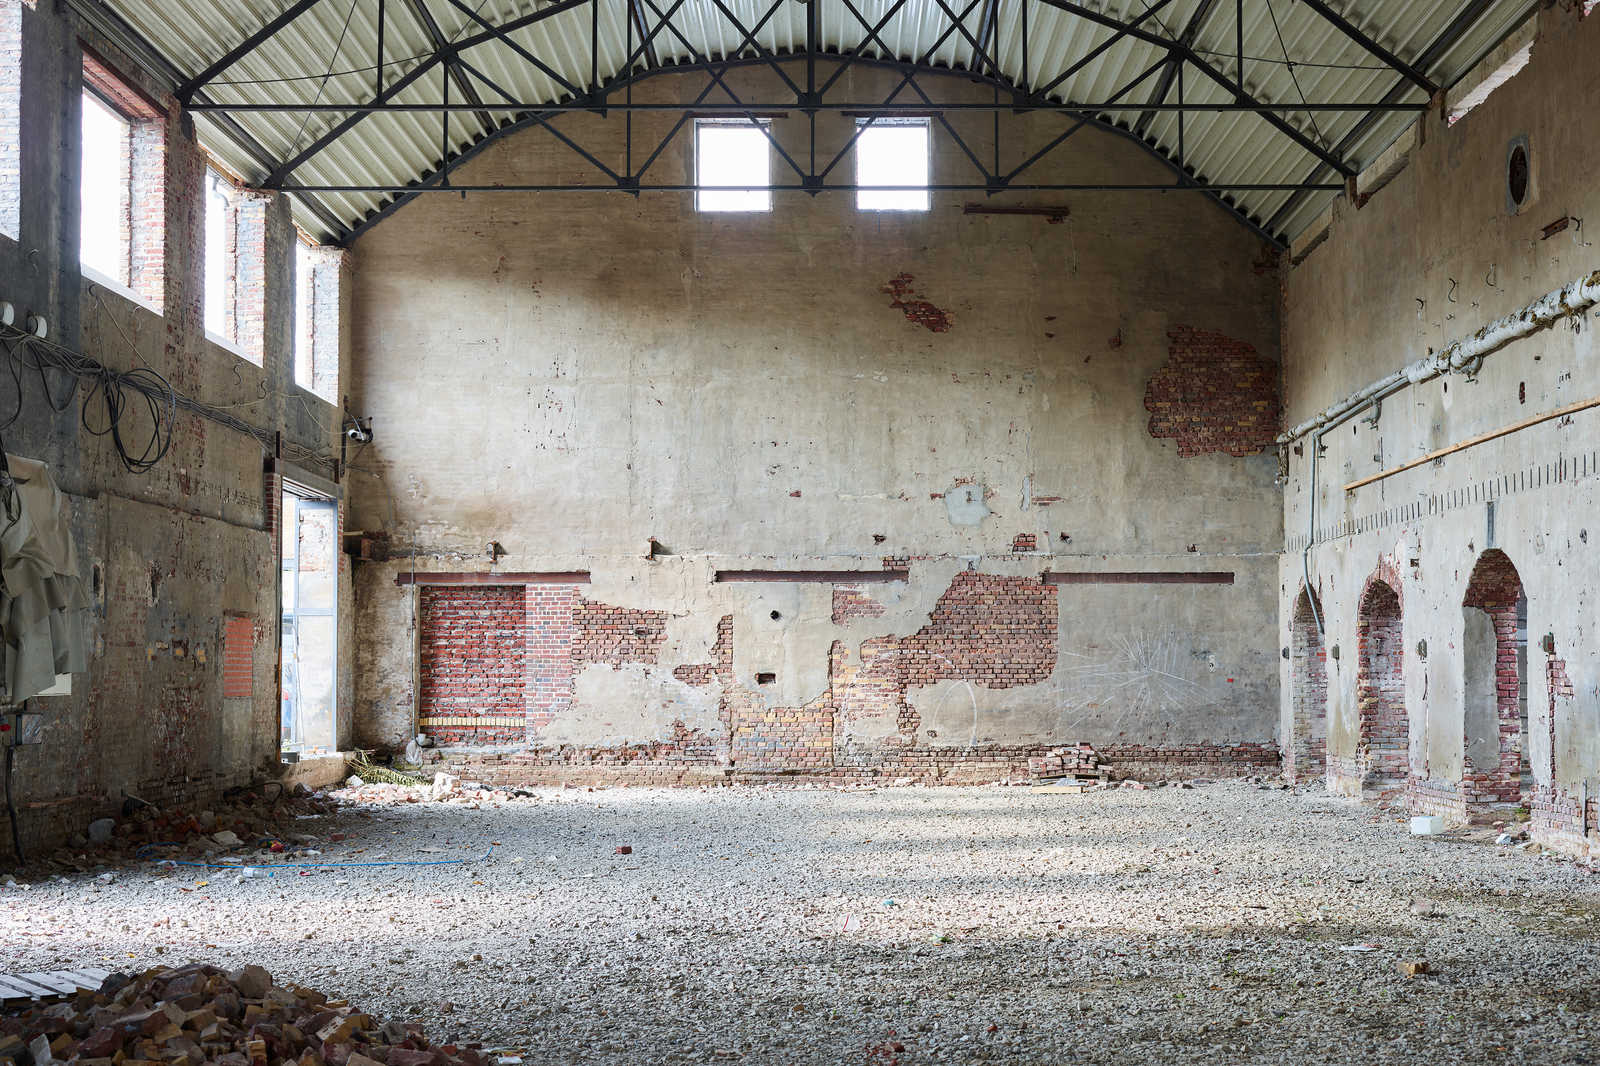             Leinwandbild mit verlassener Industriehalle – 0,90 m x 0,60 m
        